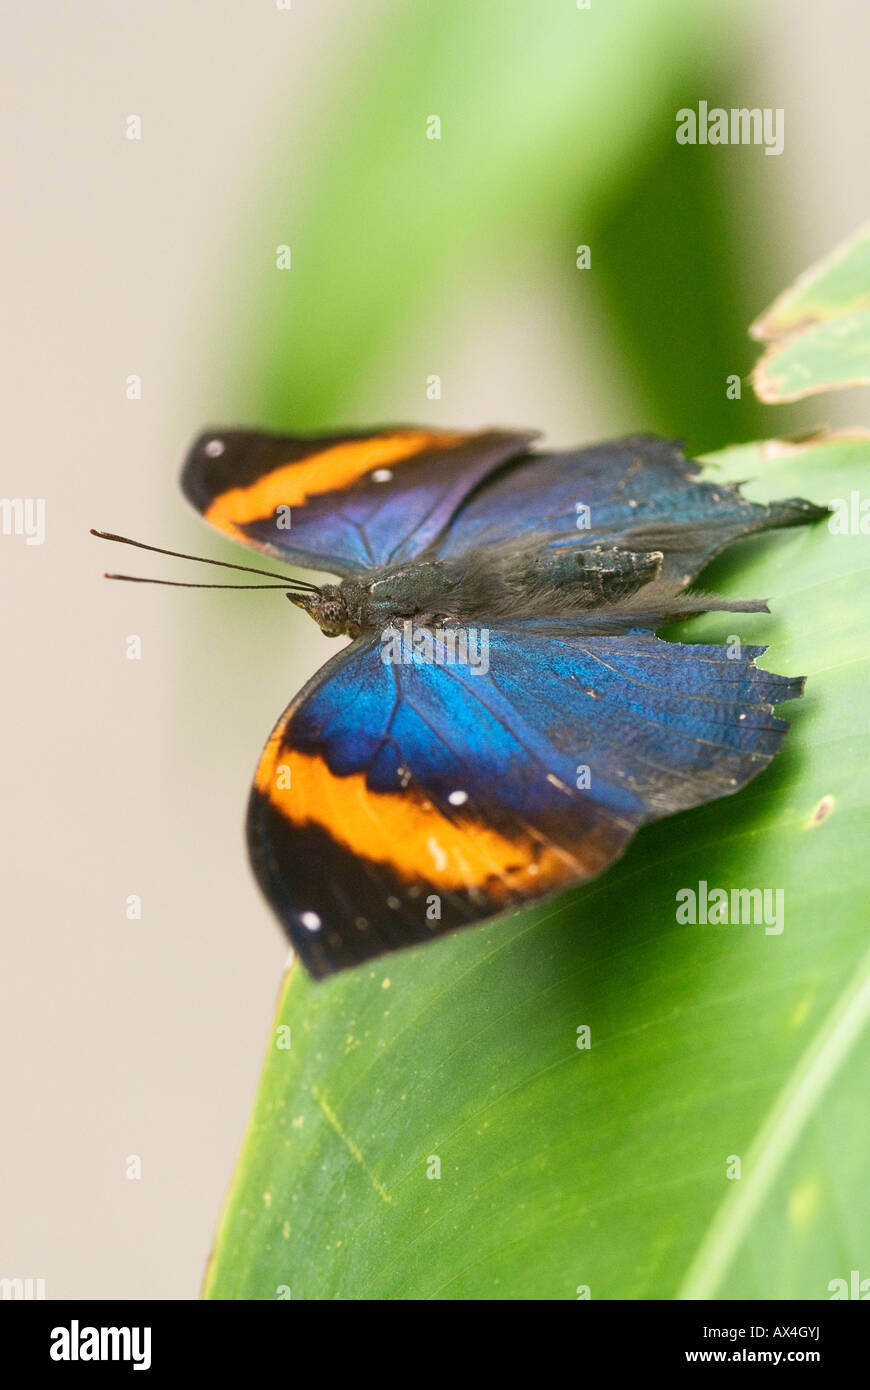 Farfalla colorata con ali esteso seduta sulla foglia verde Foto Stock